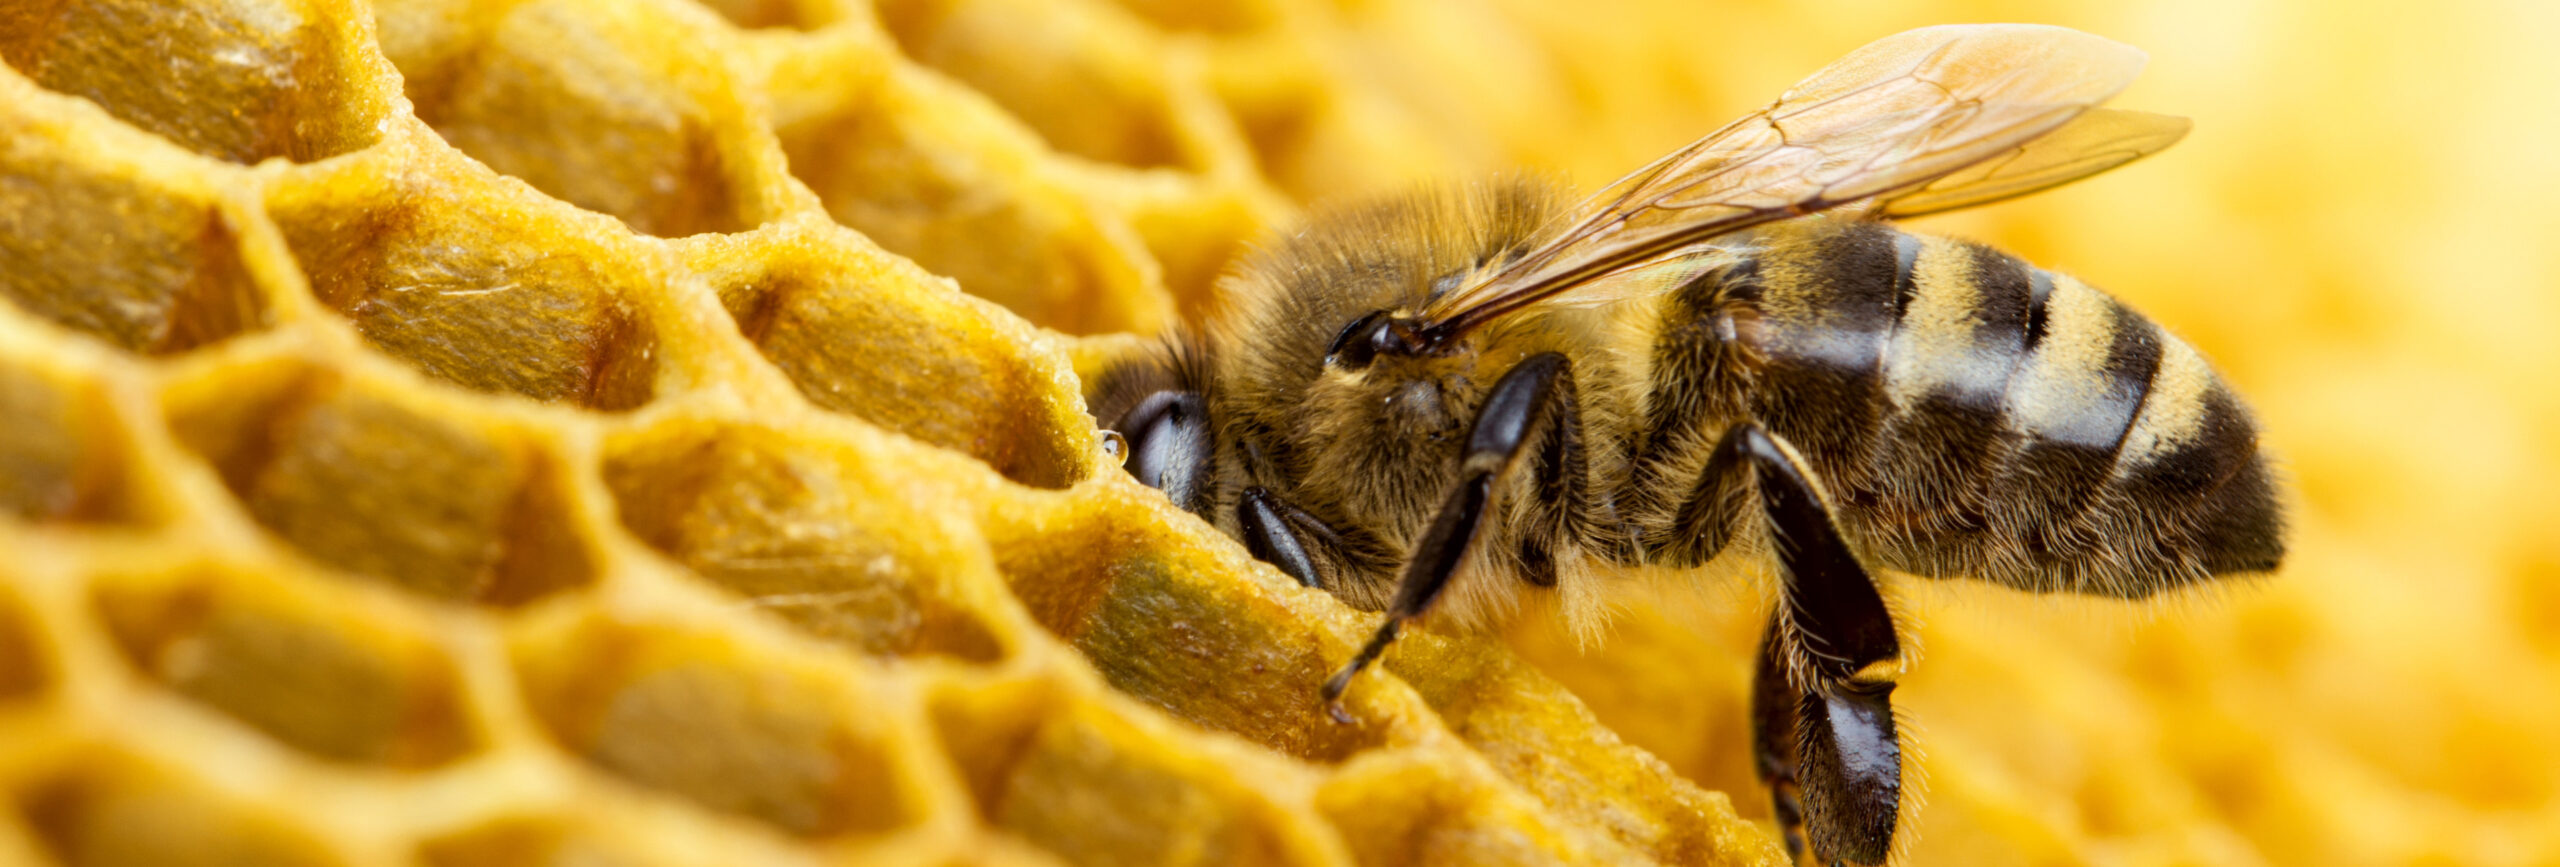 Biene in einer Bienenwabe. - insysta